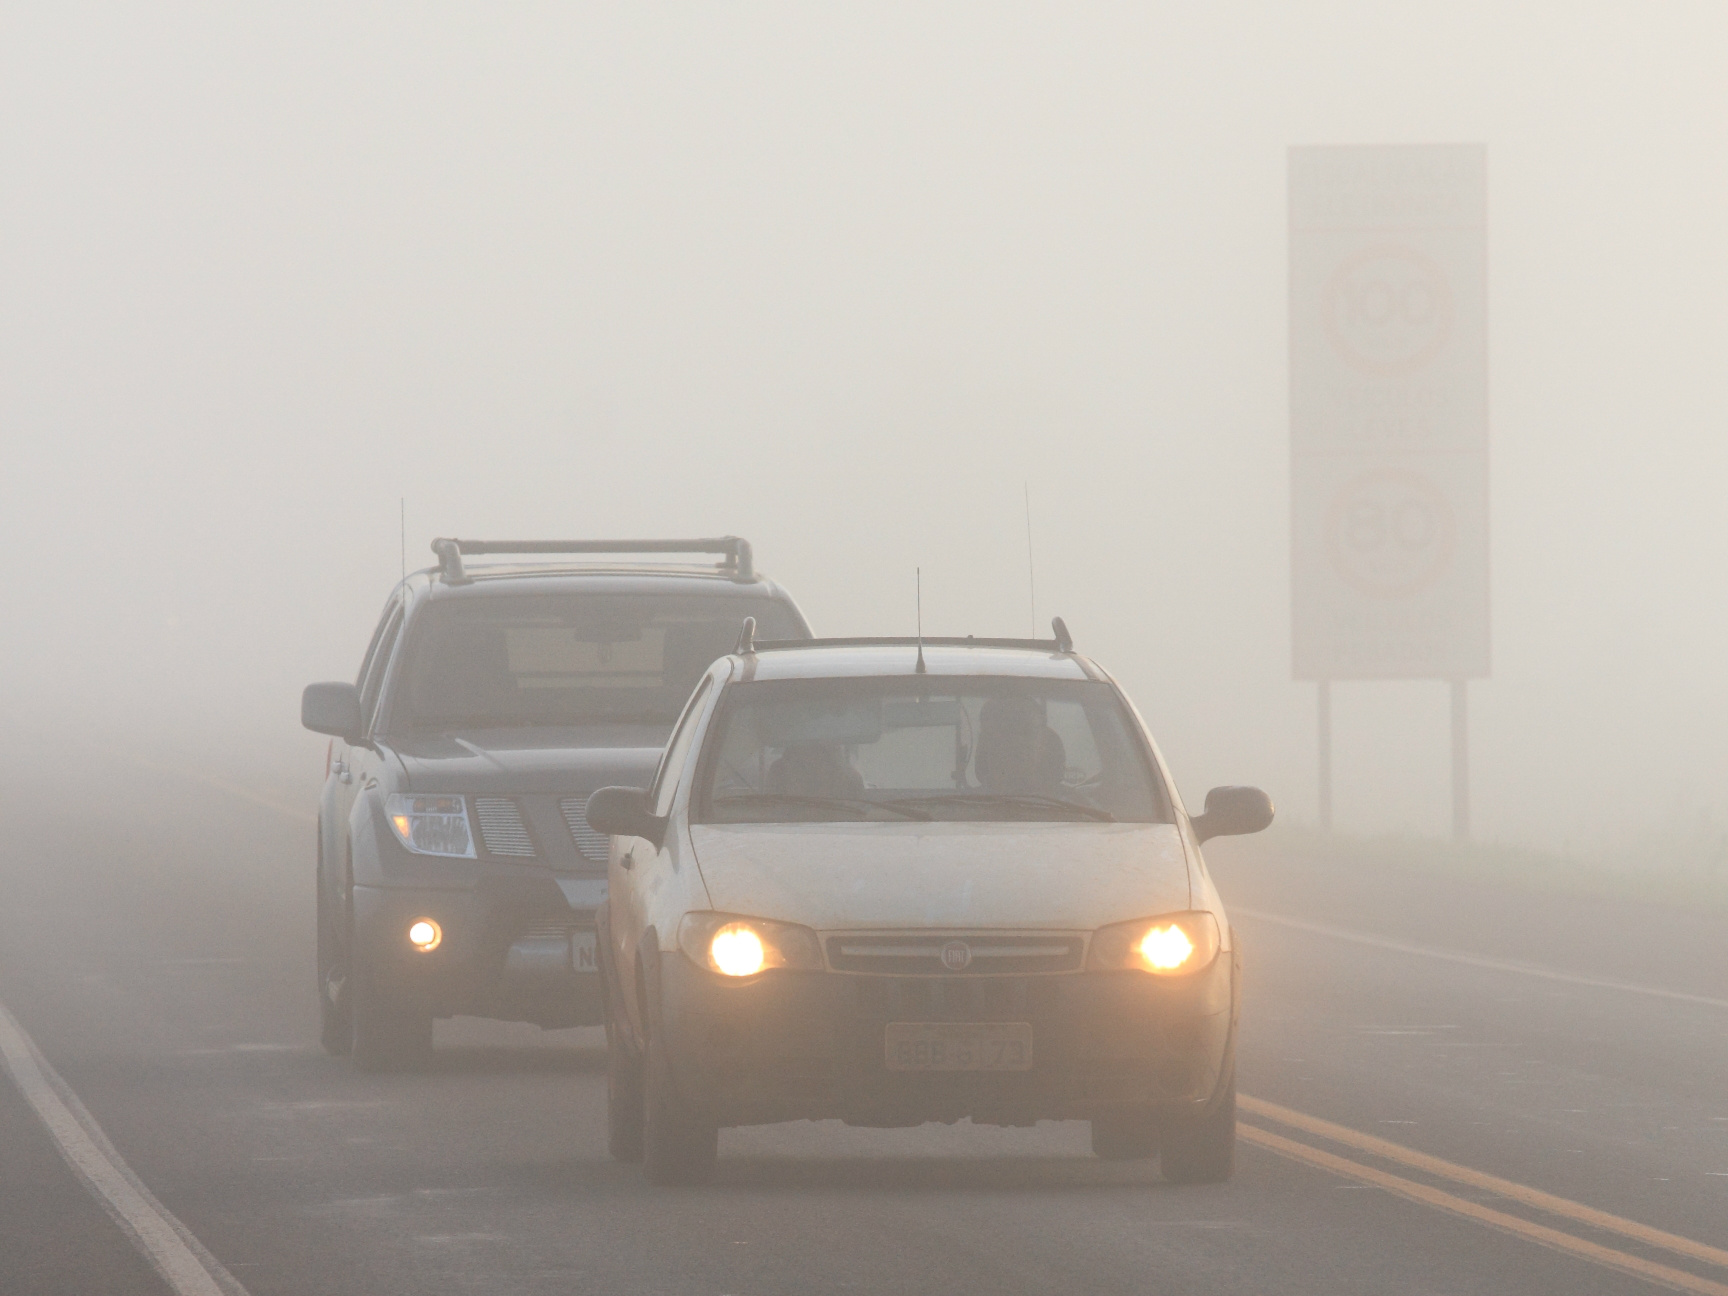 Neblina exige mais atenção dos motoristas, alerta CCR MSVia